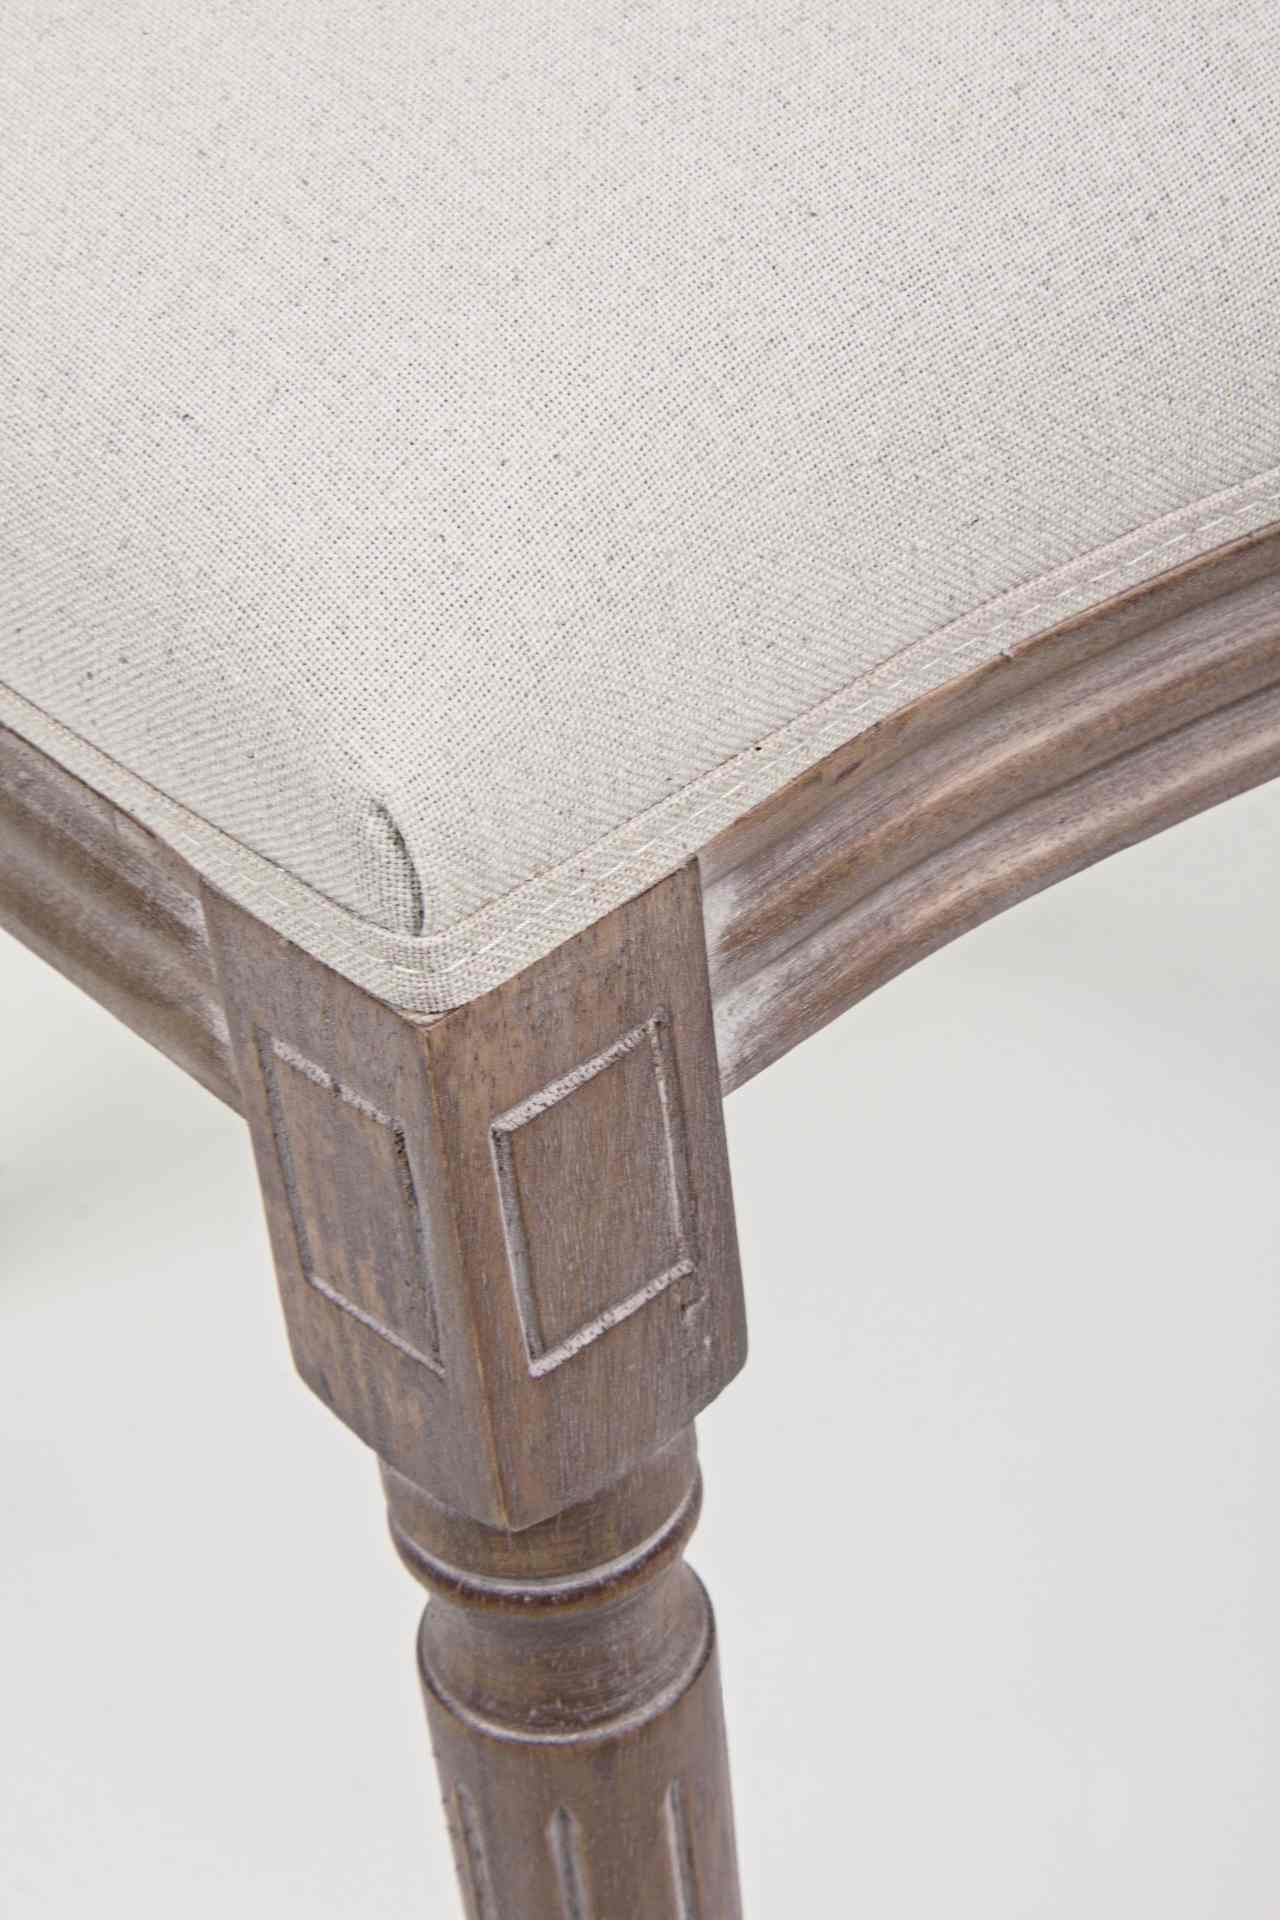 Der Stuhl Mathilde überzeugt mit seinem klassischem Design gefertigt wurde der Stuhl aus Birkenholz, welches natürlich gehalten ist. Die Sitz- und Rückenfläche ist aus einem Stoff-Bezug, welcher einen weißen Farbton besitzt und ein Mix aus Baumwolle und L